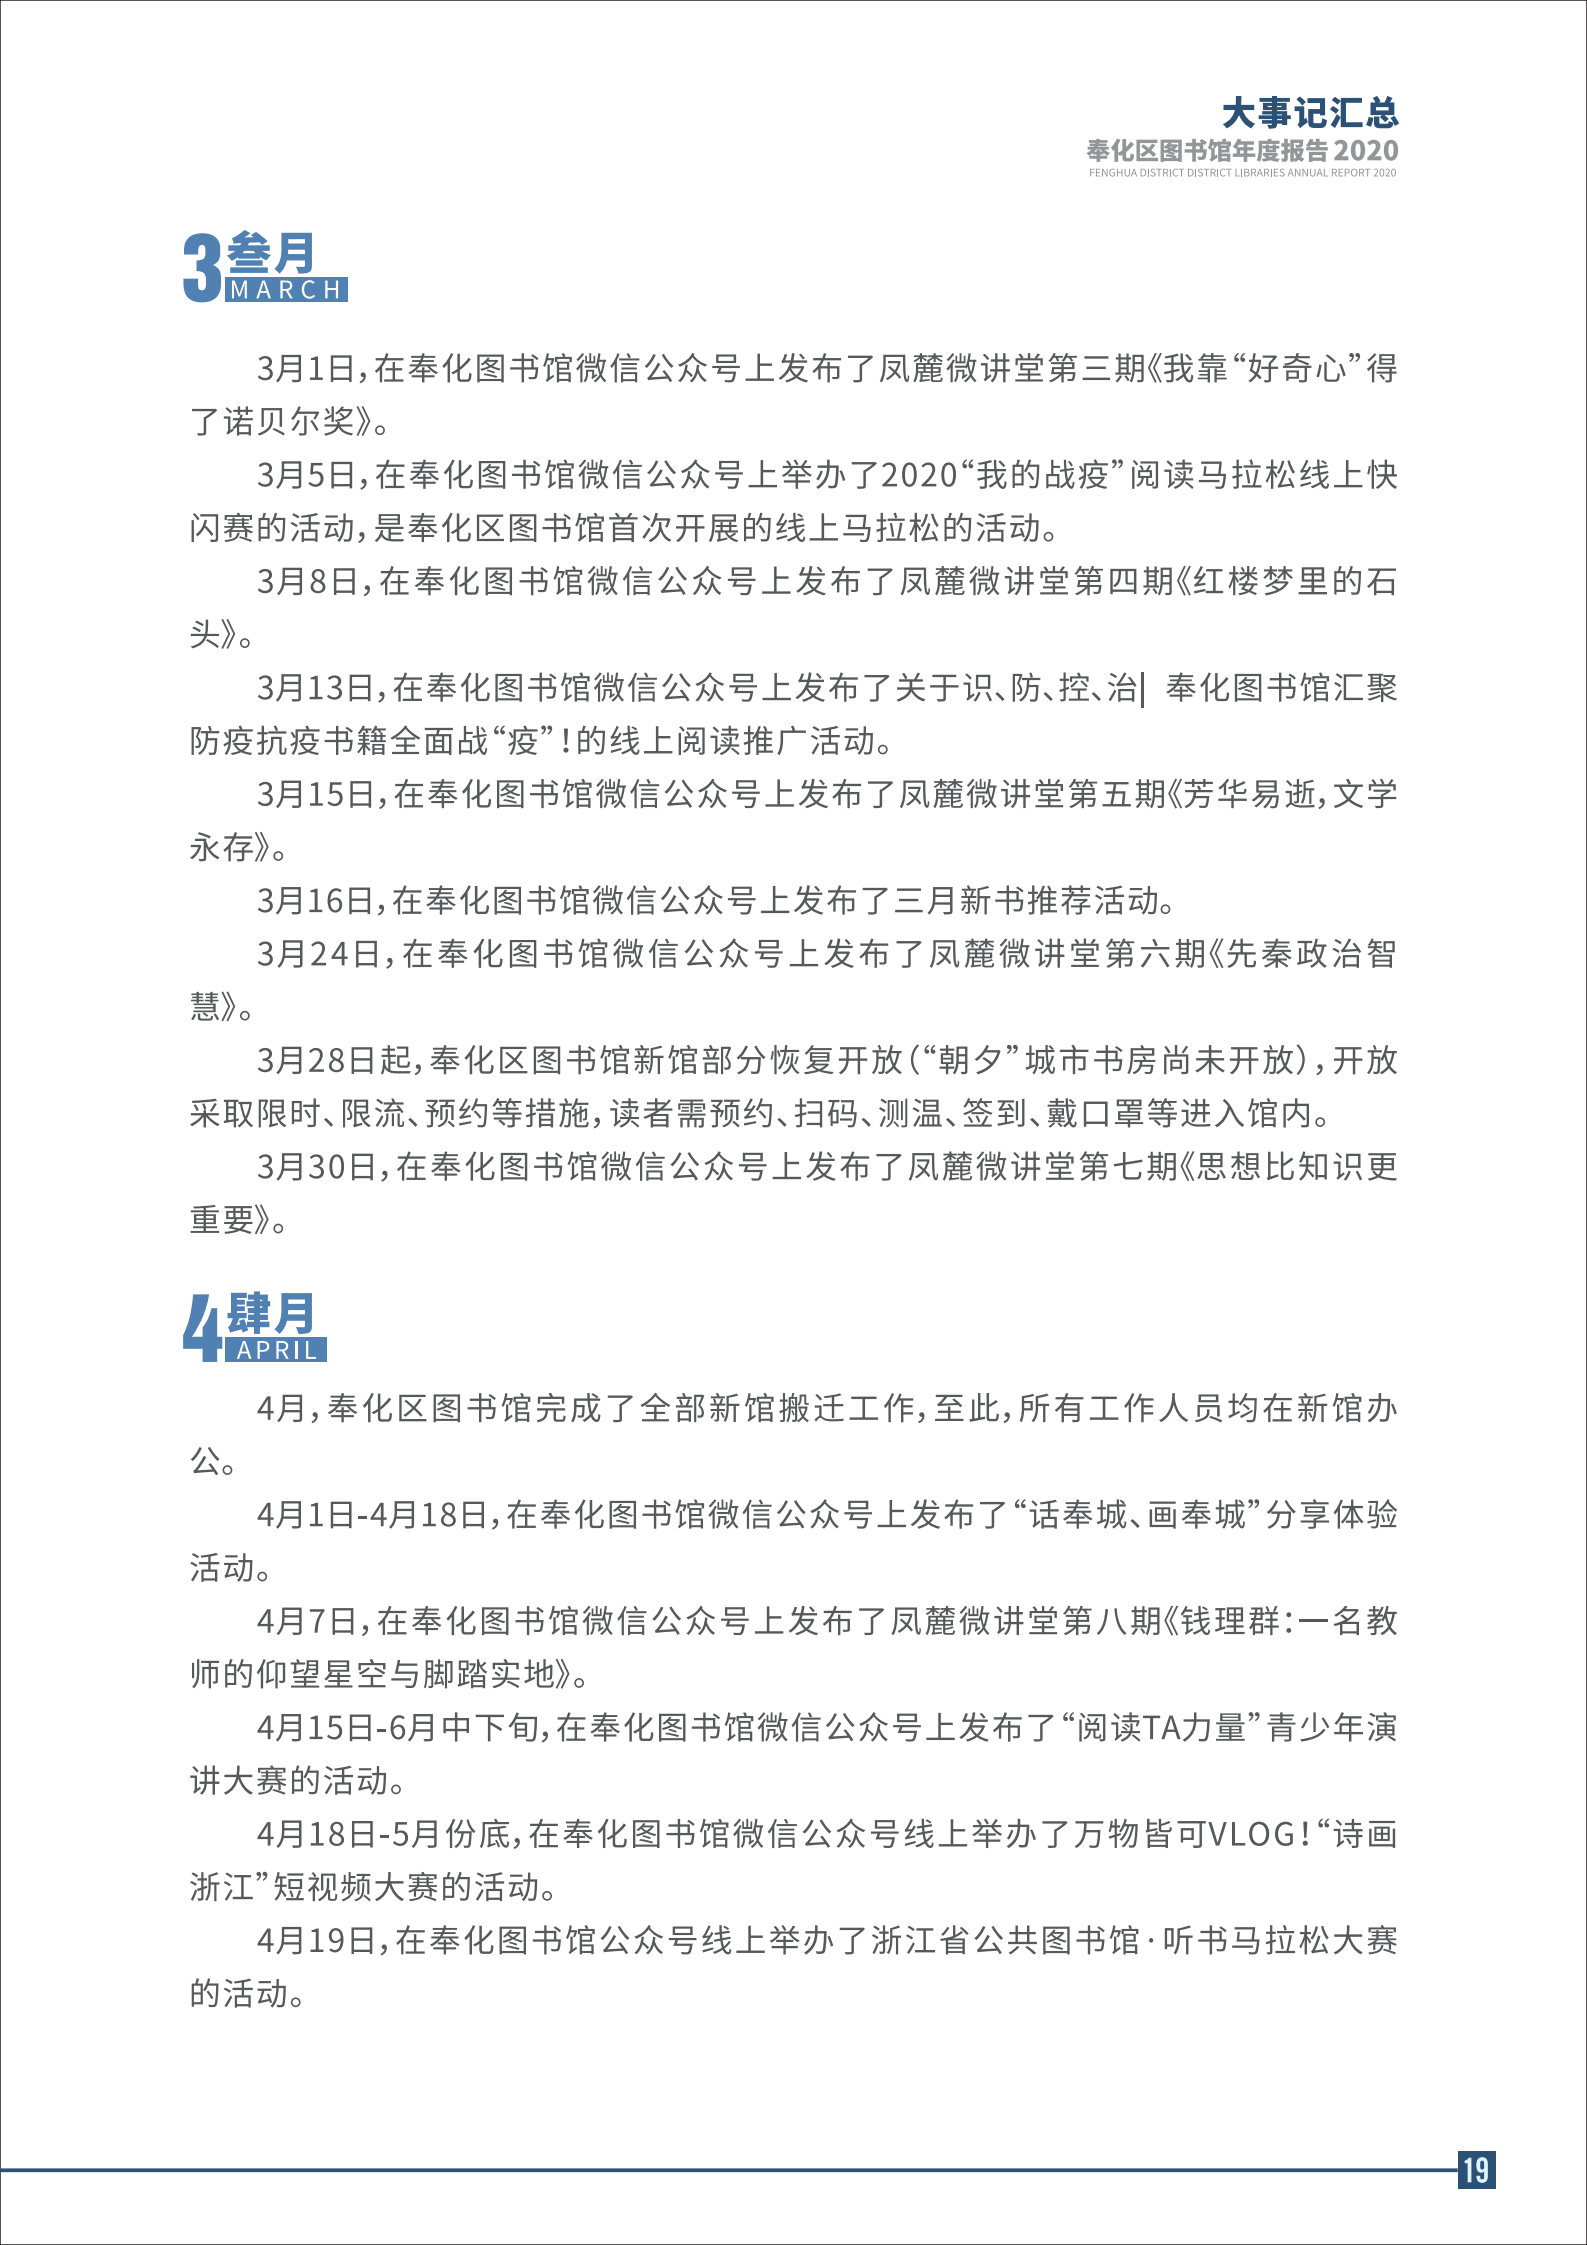 宁波市奉化区图书馆2020年年度报告 终稿_19.png